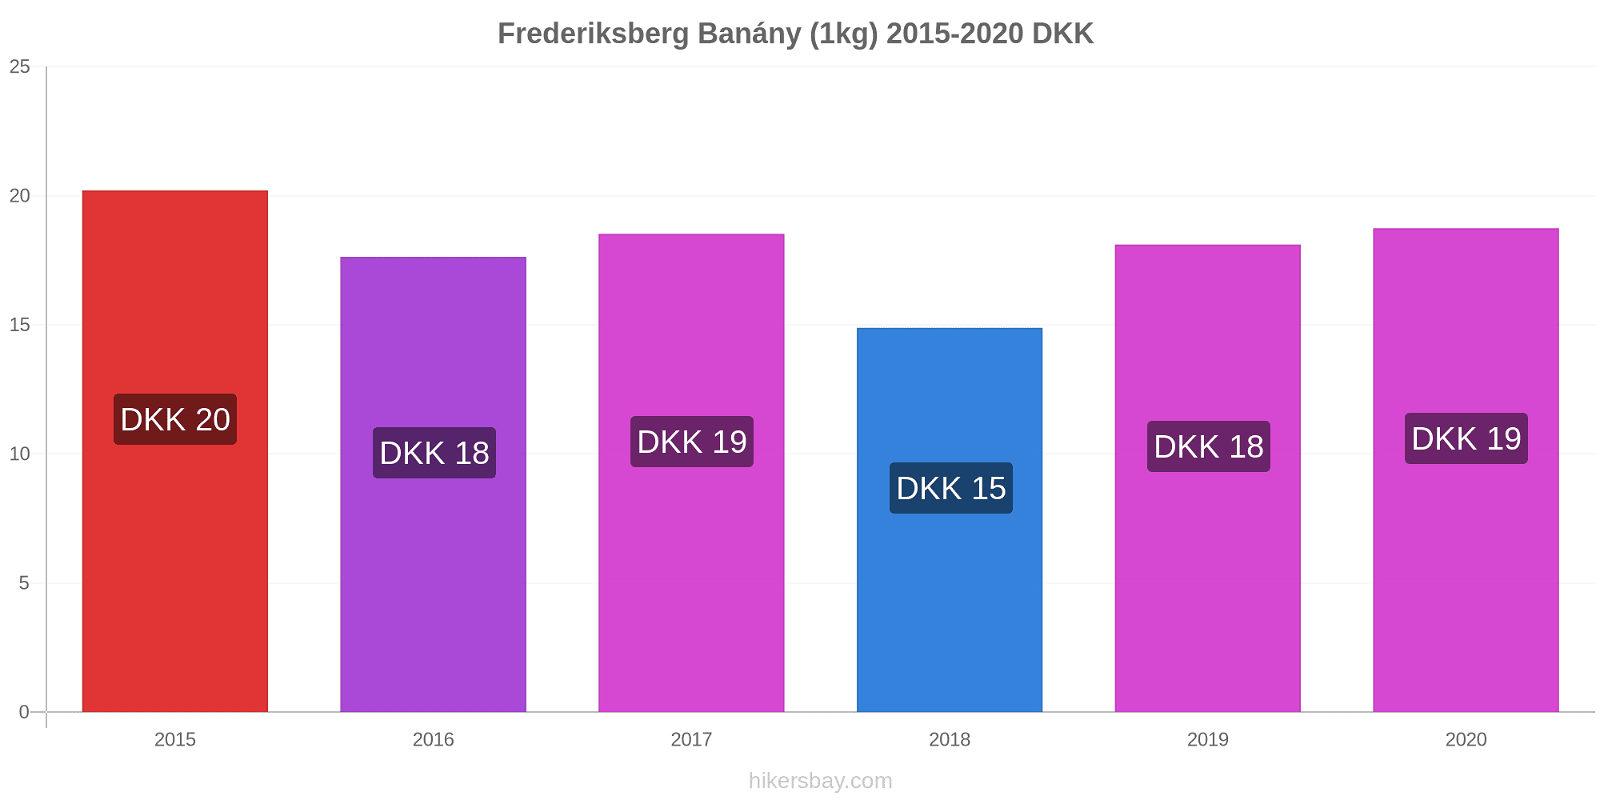 Frederiksberg změny cen Banány (1kg) hikersbay.com